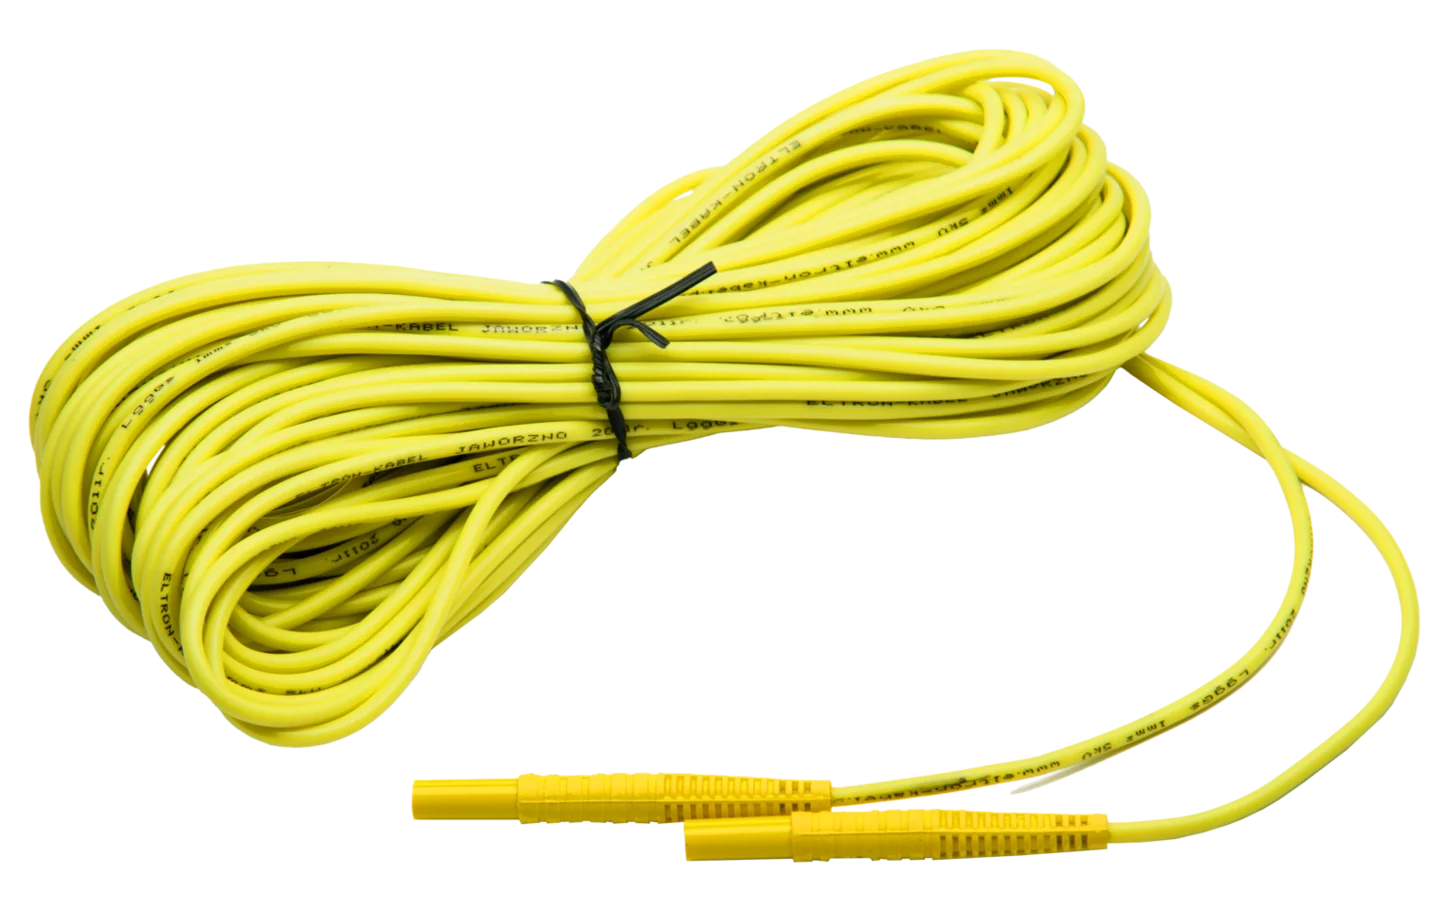 Przewód 20 m żółty 1 kV (wtyki bananowe)